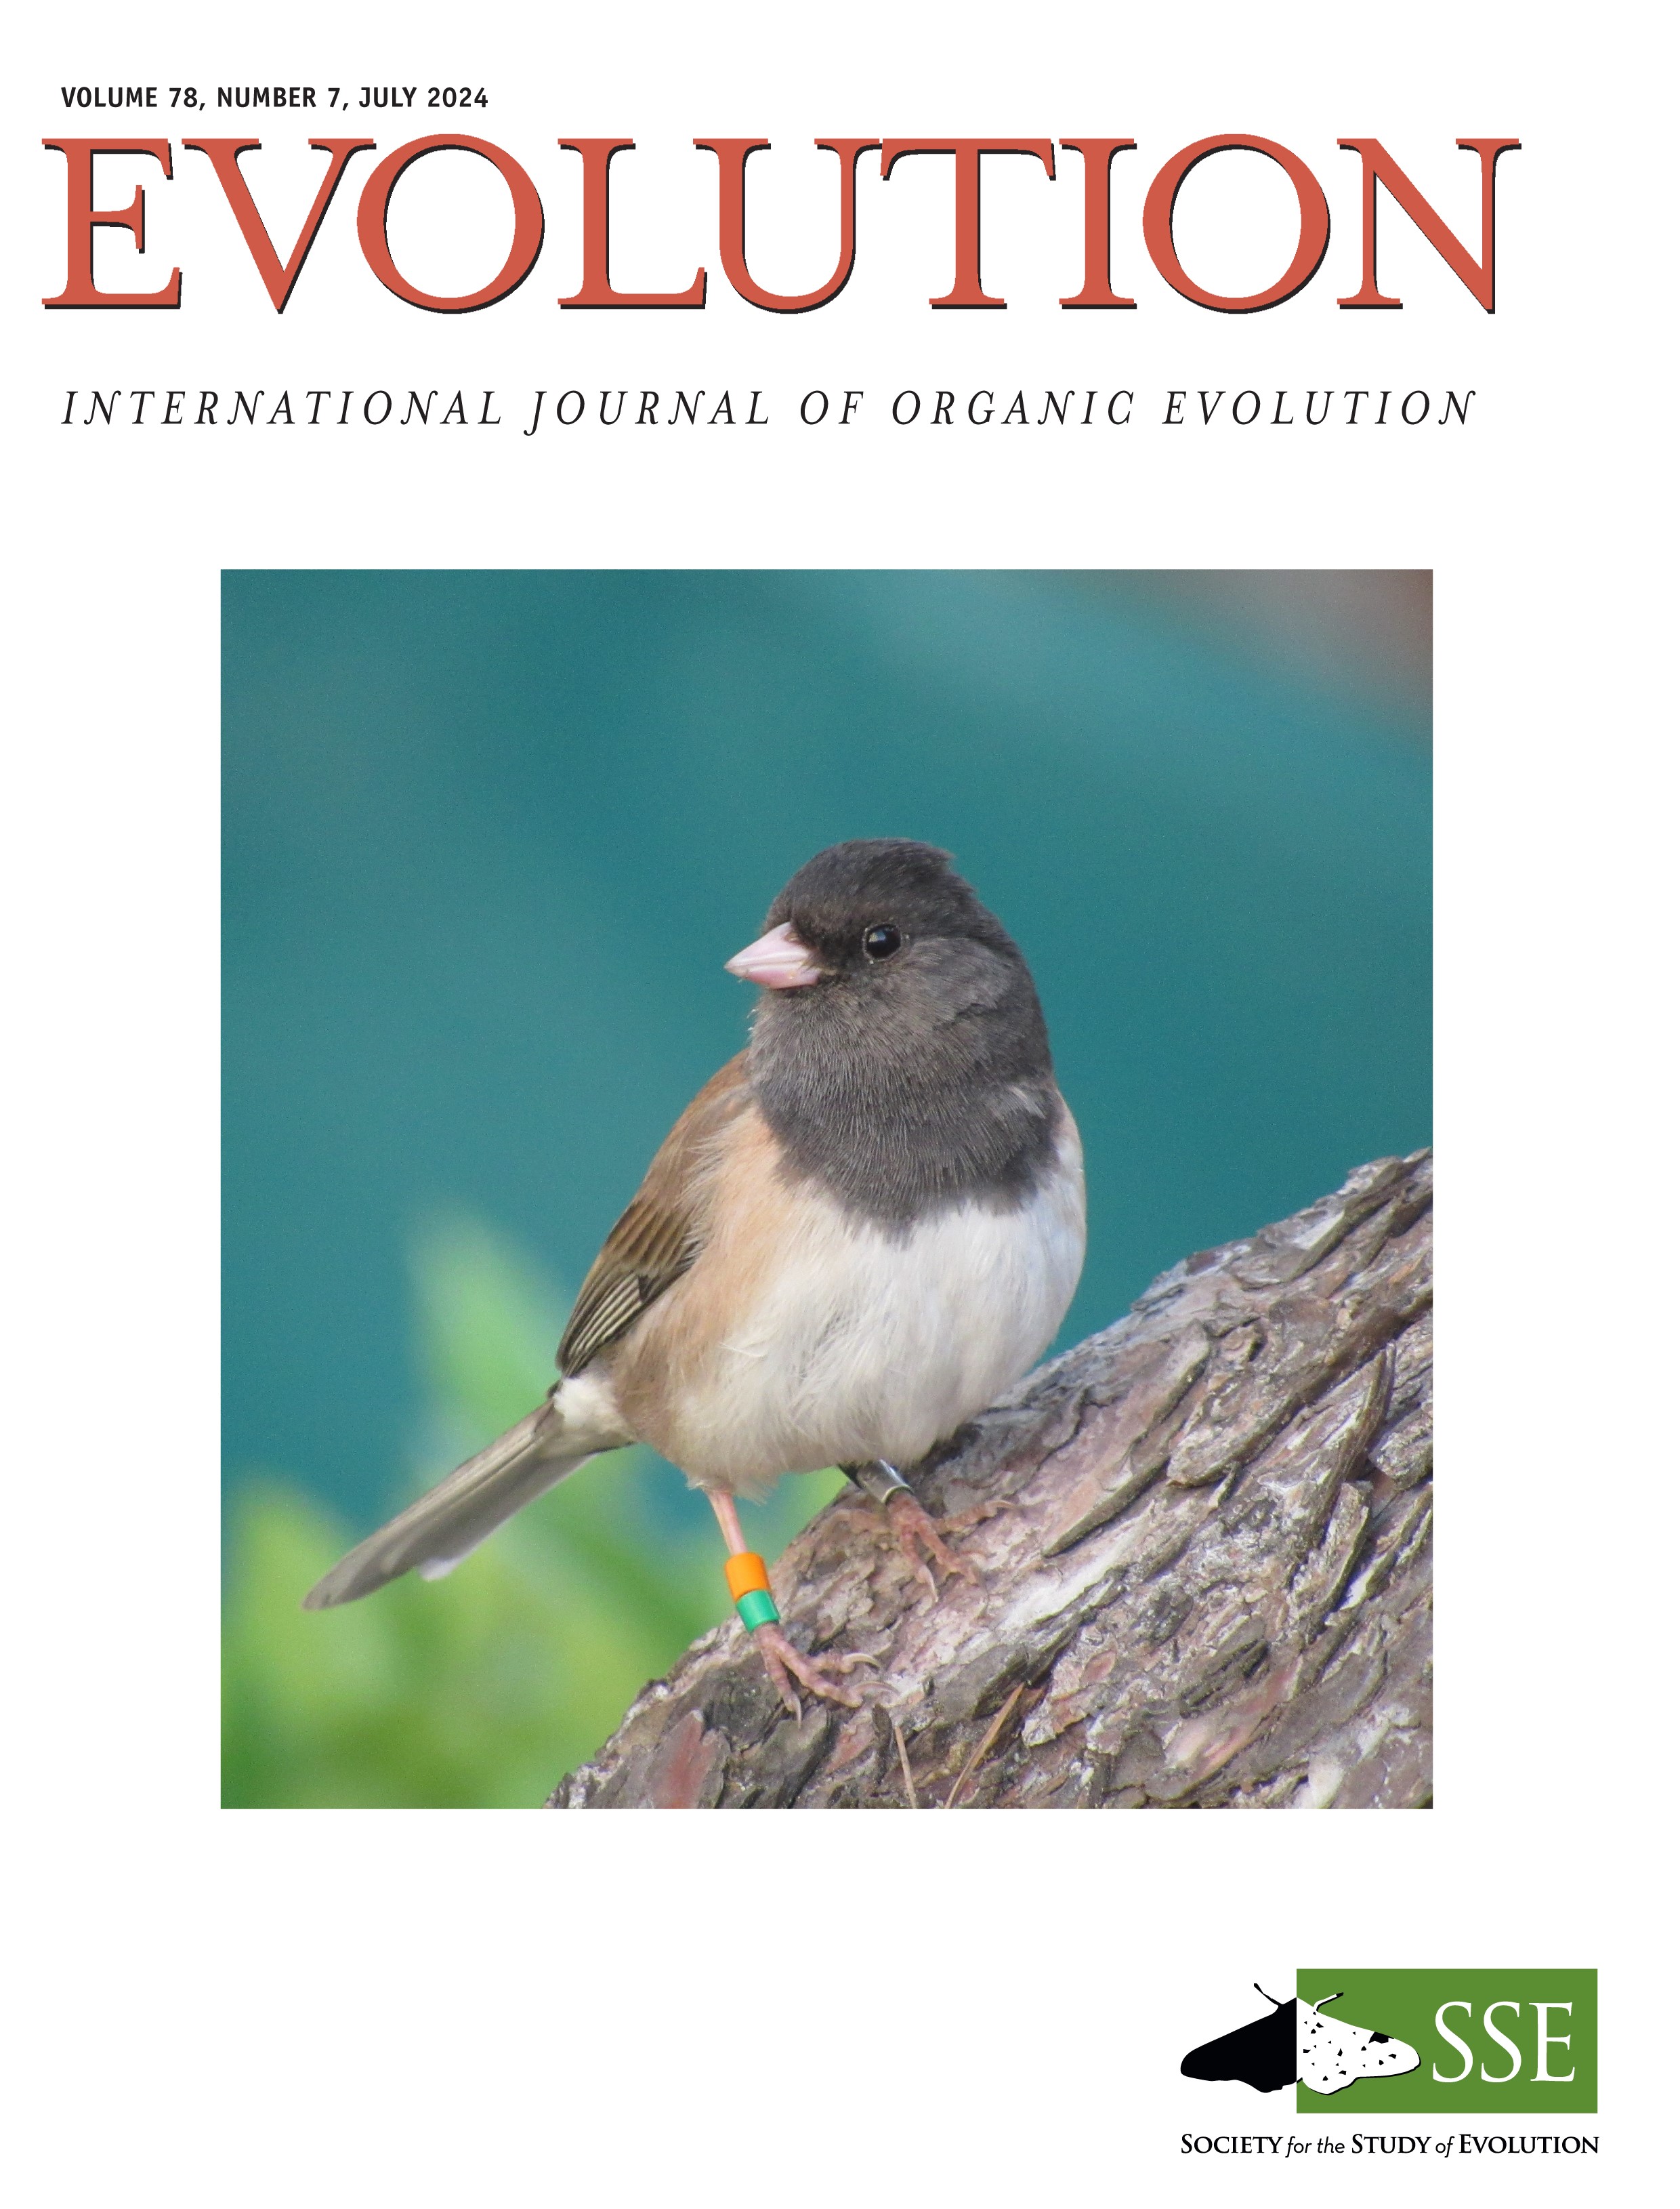 Evolution journal cover